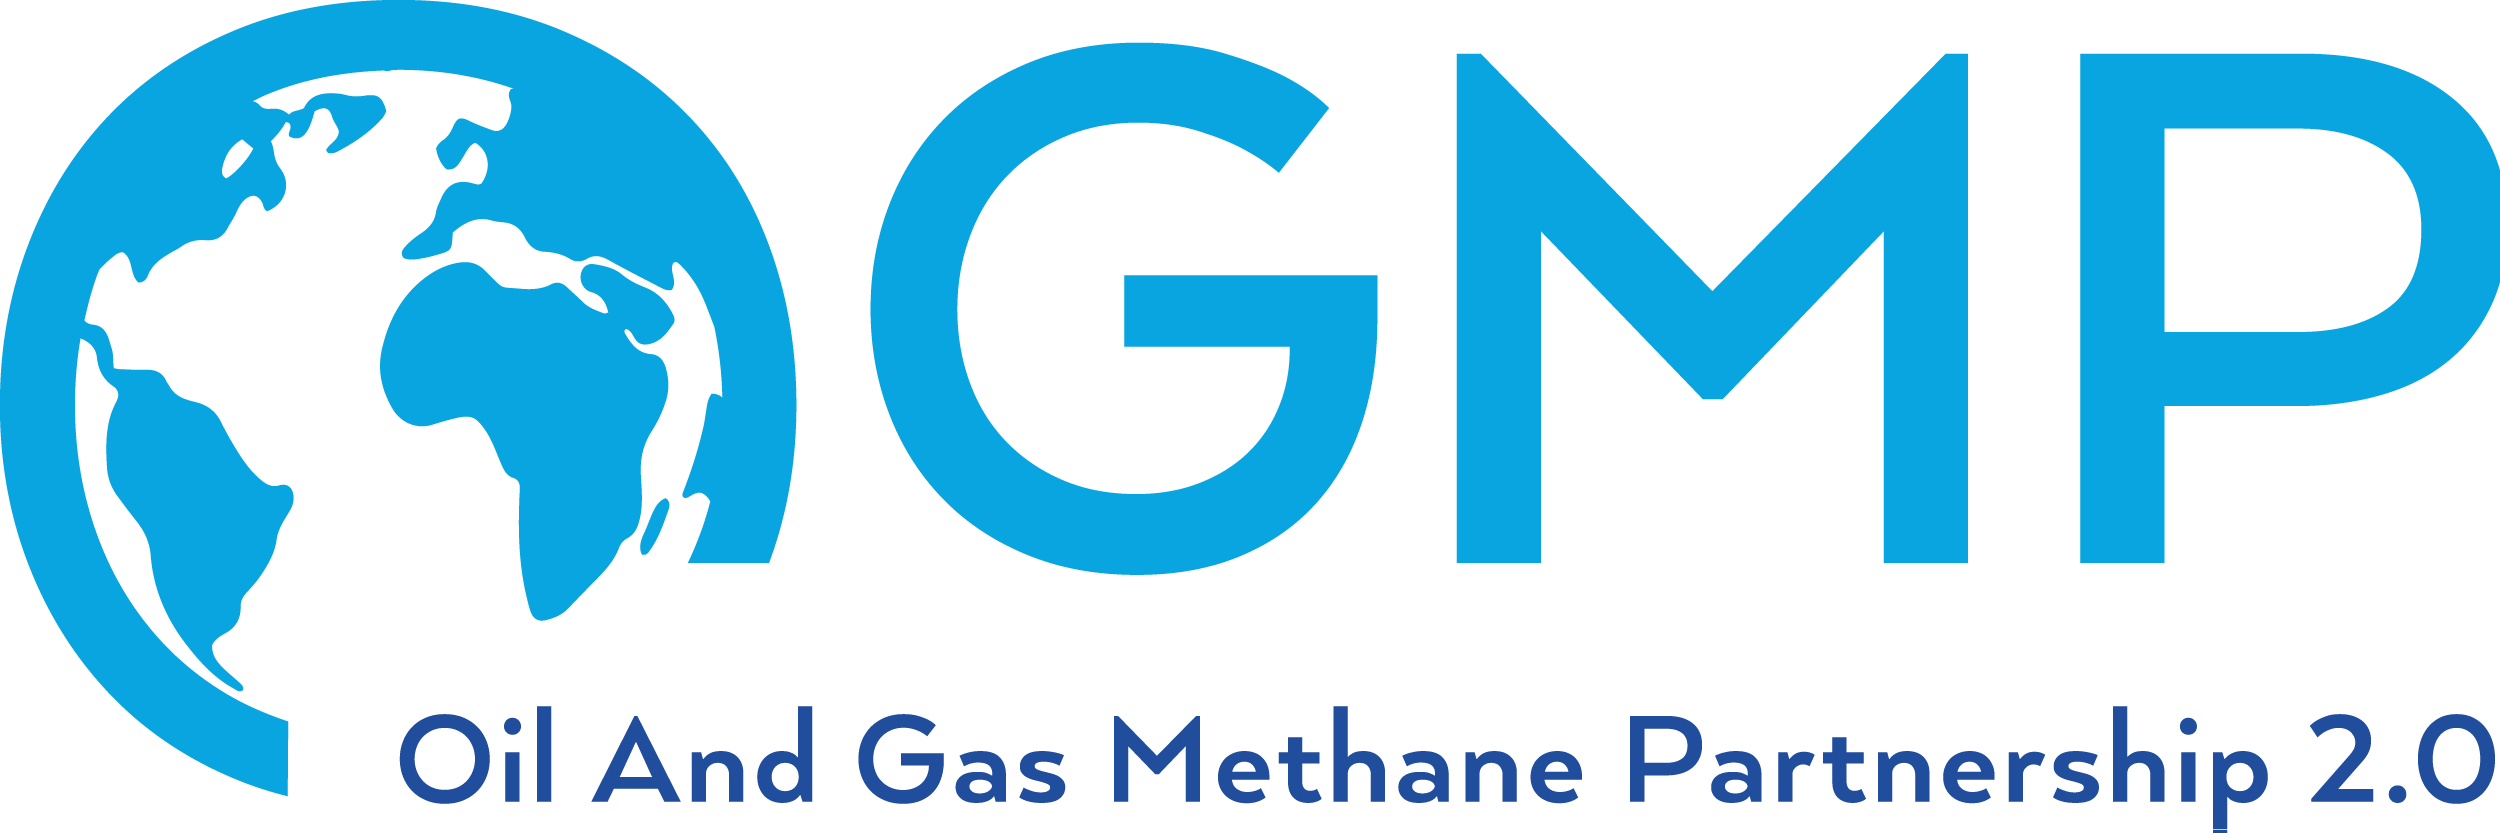 Unímonos á alianza para a redución de emisións de metano no sector gasista